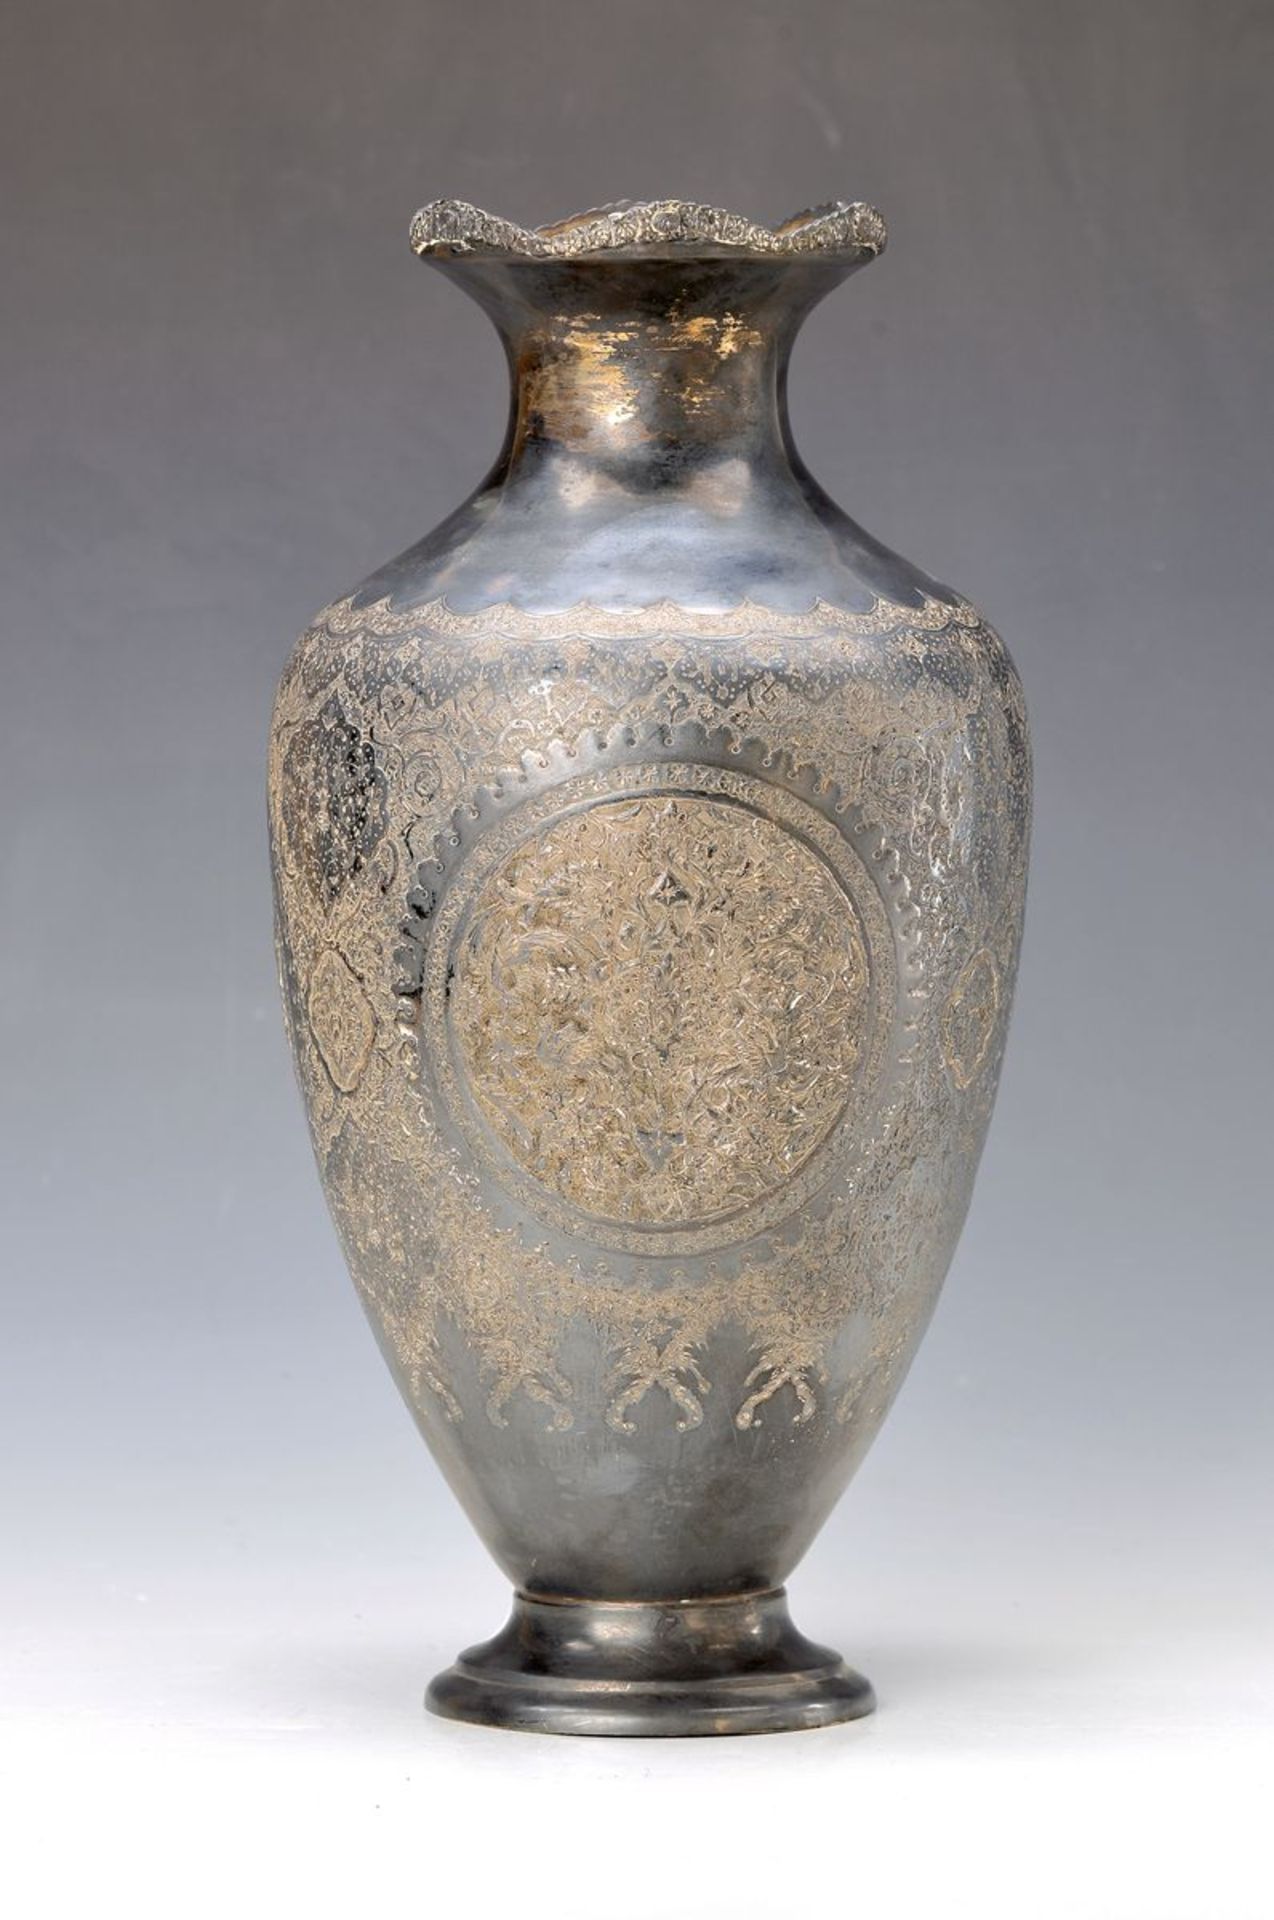 Vase, Persien, um 1950-60, Silber, reich graviert, Treibarbeit, H. ca. 36cm, ca. 1270g